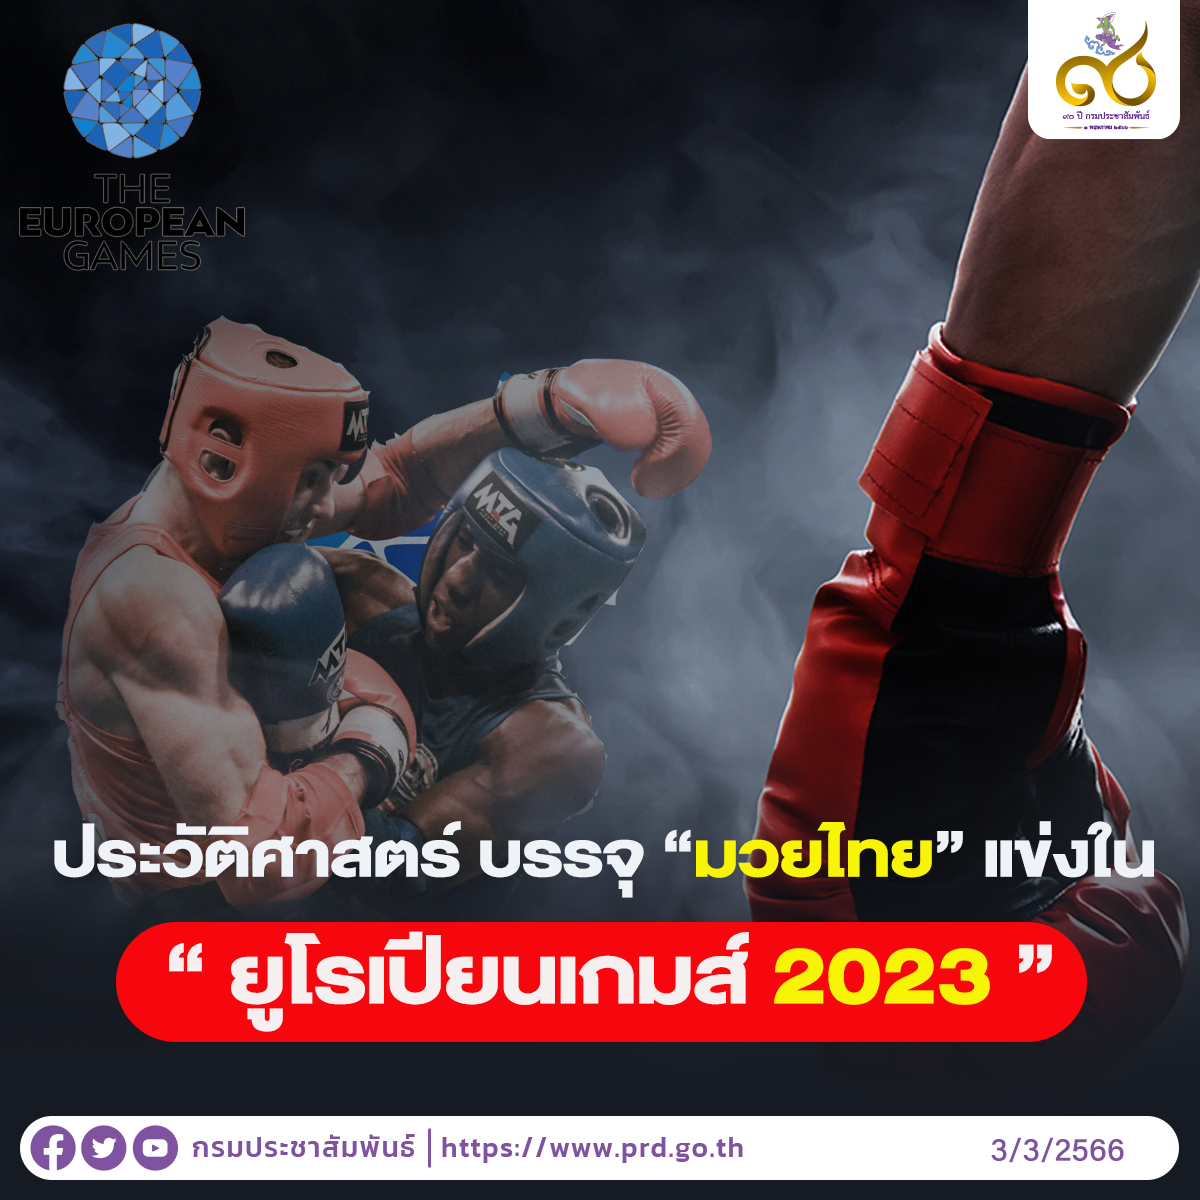 ประวัติศาสตร์ บรรจุ “มวยไทย” แข่งใน “ยูโรเปียนเกมส์ 2023”